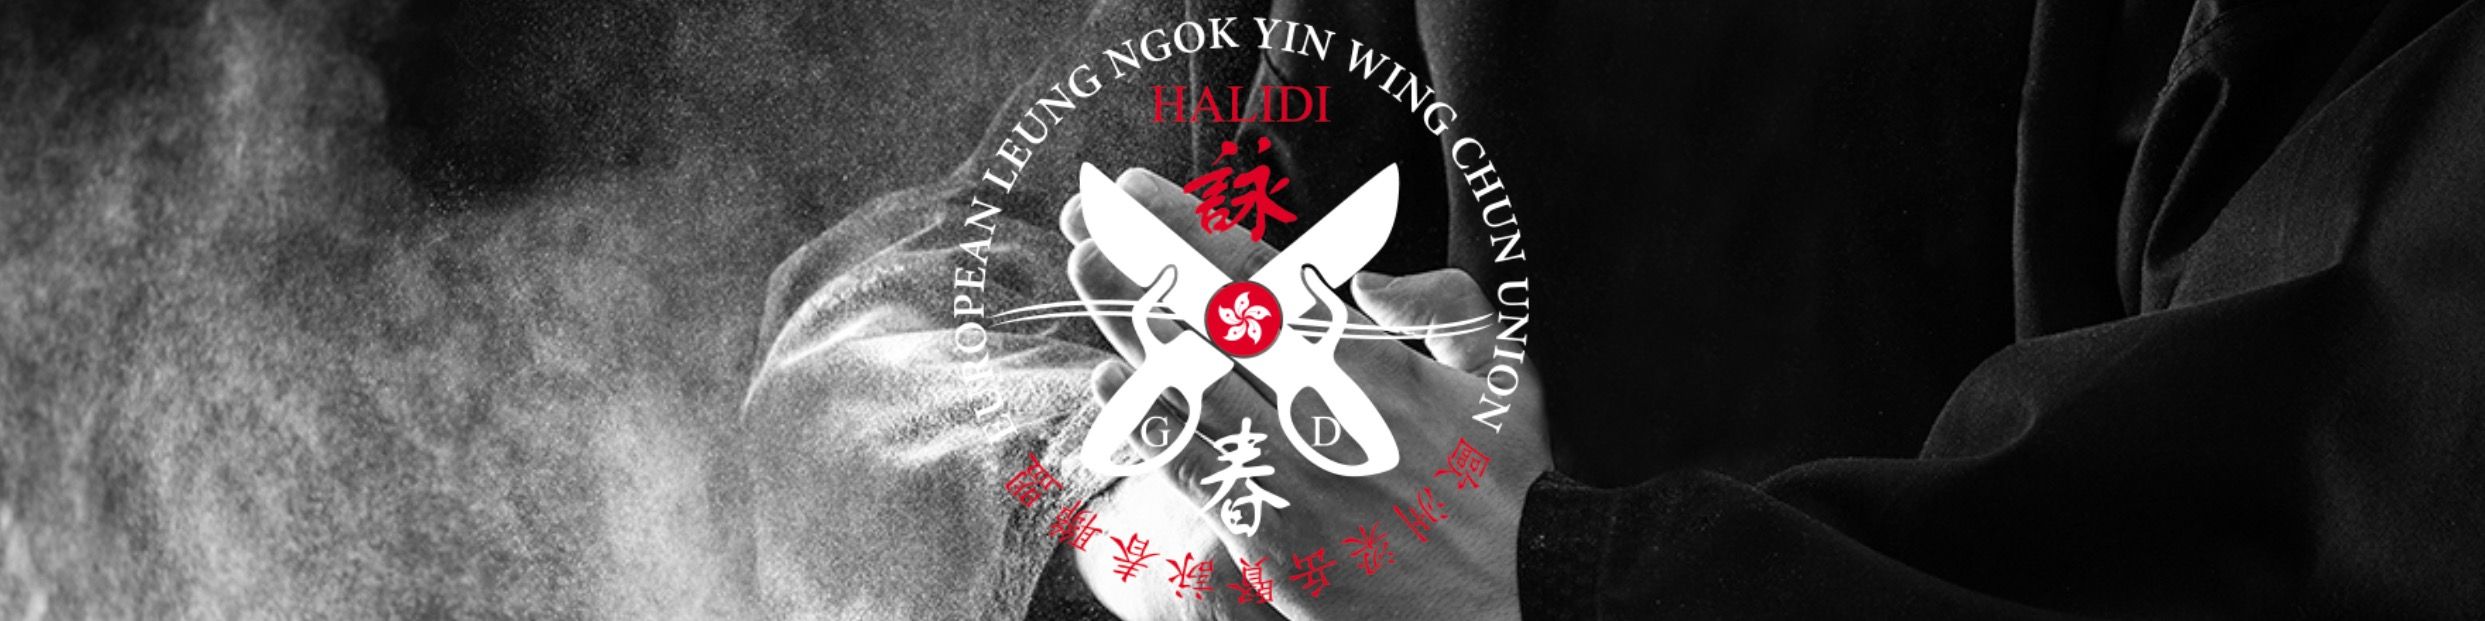 Titelbild von Wing Chun Europe | Wendlingen